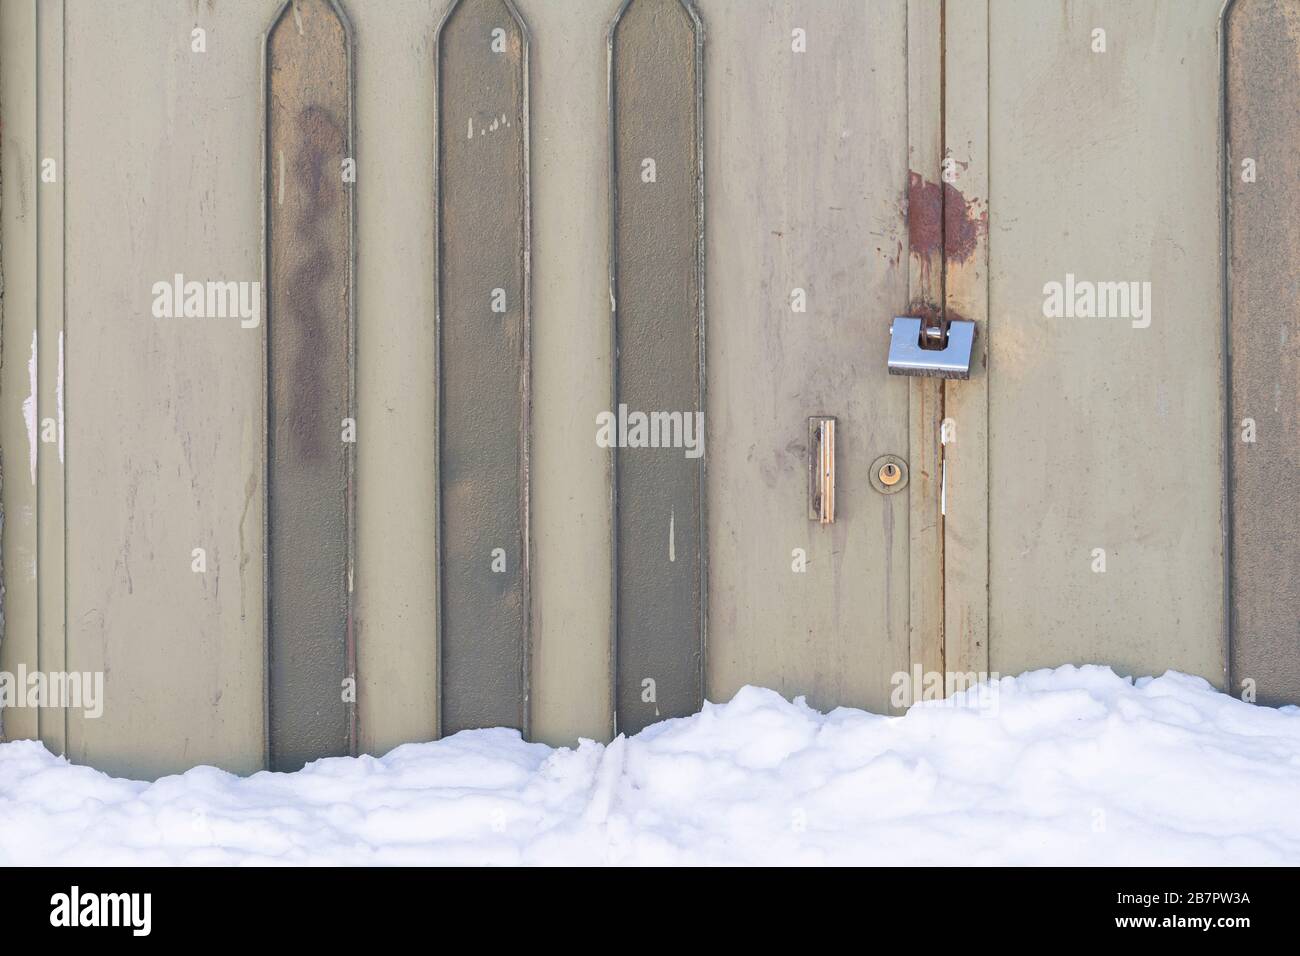 vecchia porta arrugginita allacciata da lucchetto in acciaio, neve invernale accatastata di fronte alla porta Foto Stock